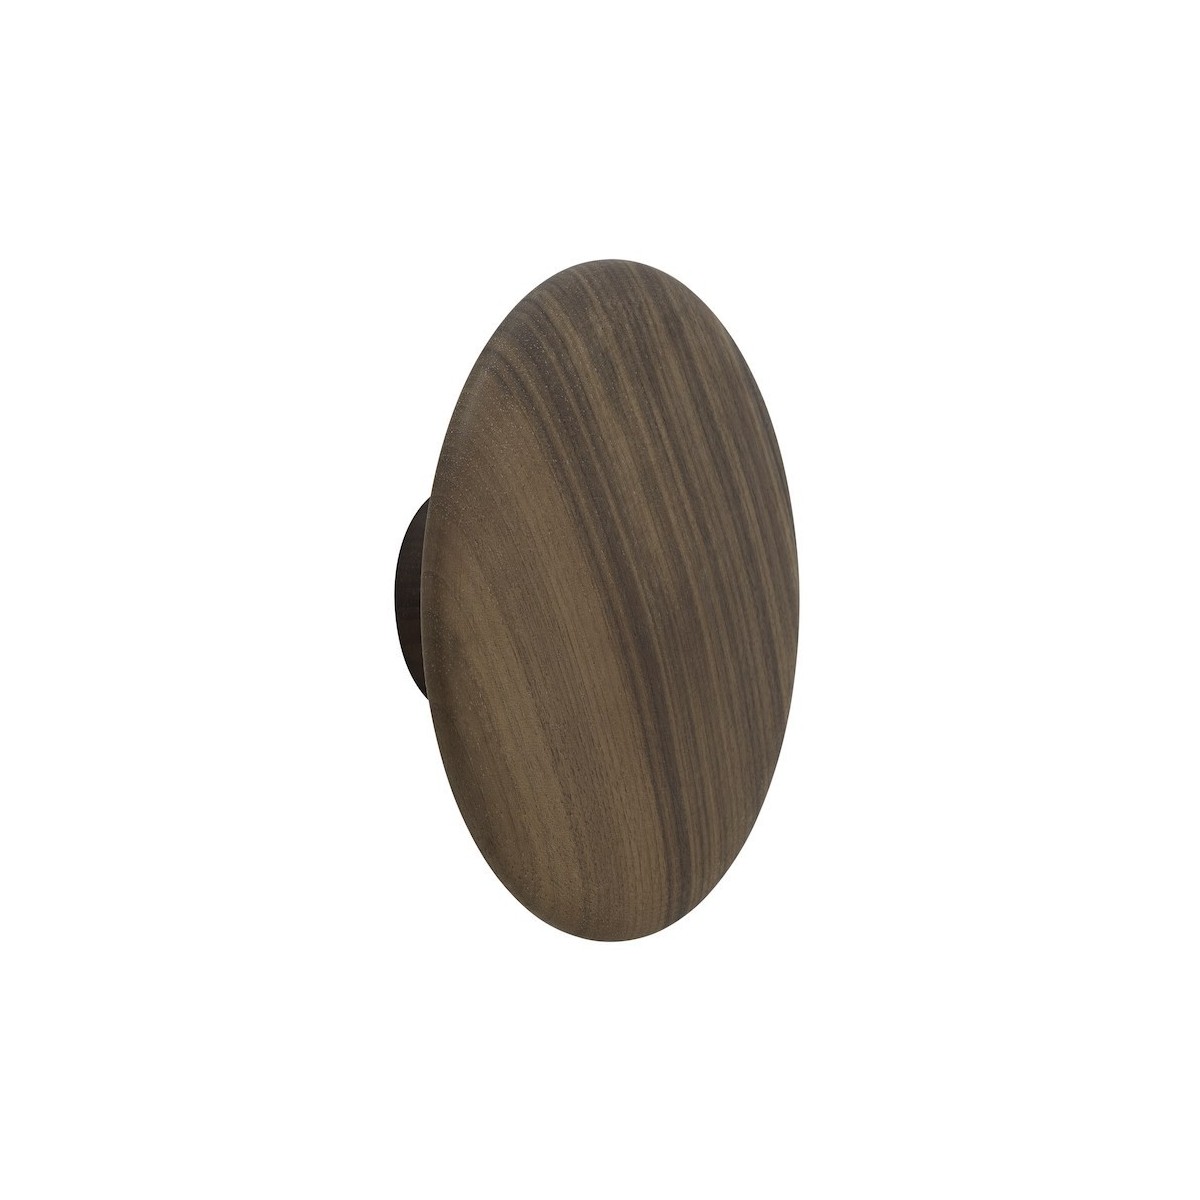 Ø6,5 cm (XS) - walnut - The Dots wood